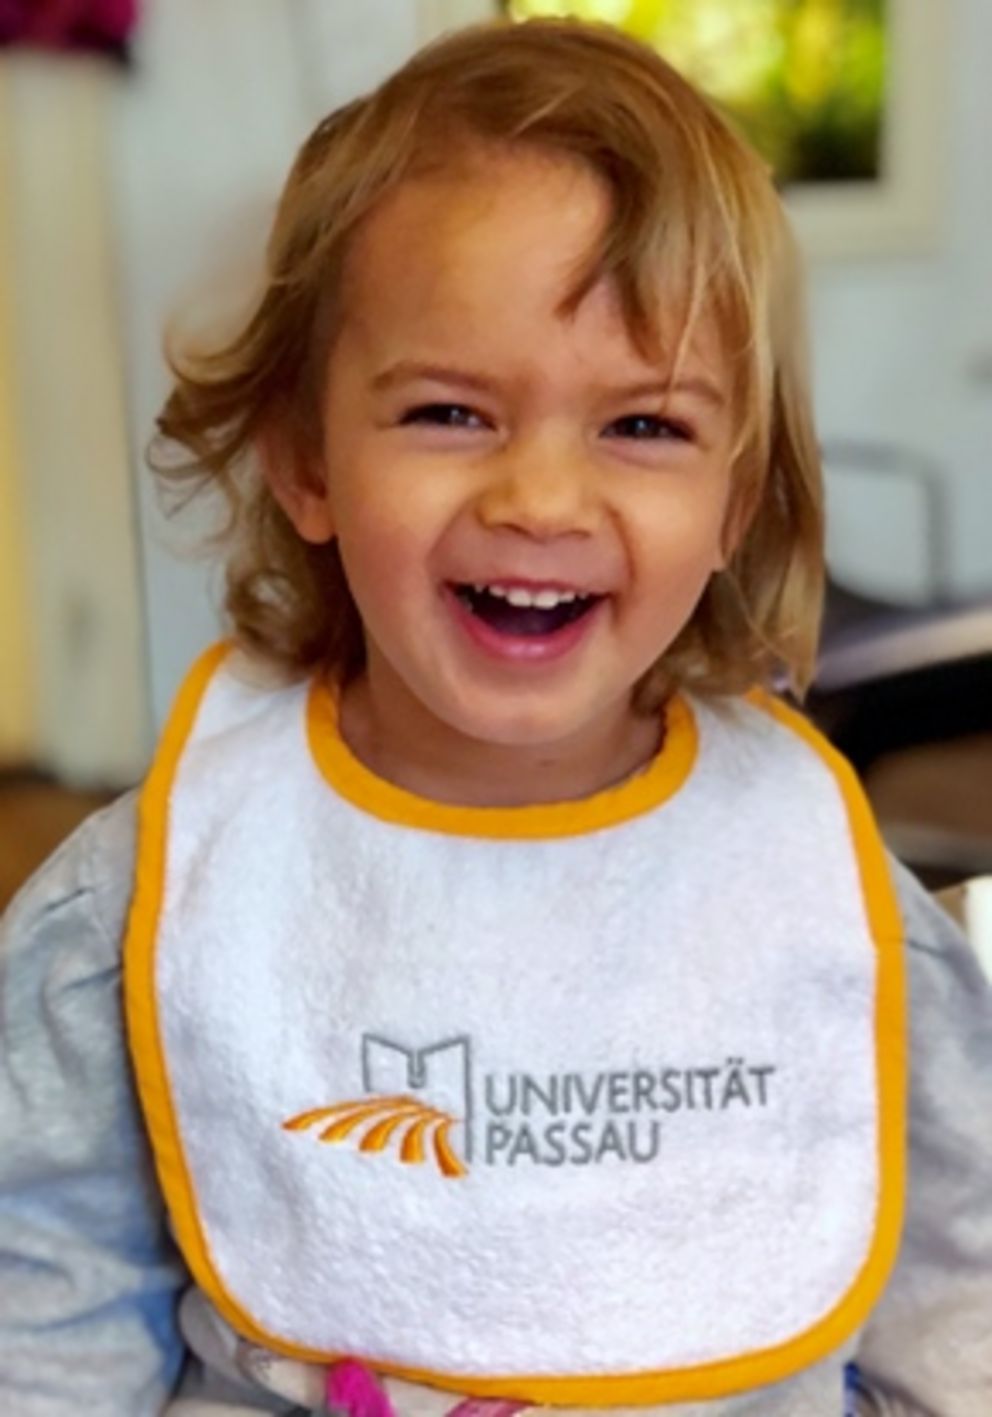 Lachendes Kind mit Universität Passau-Lätzchen